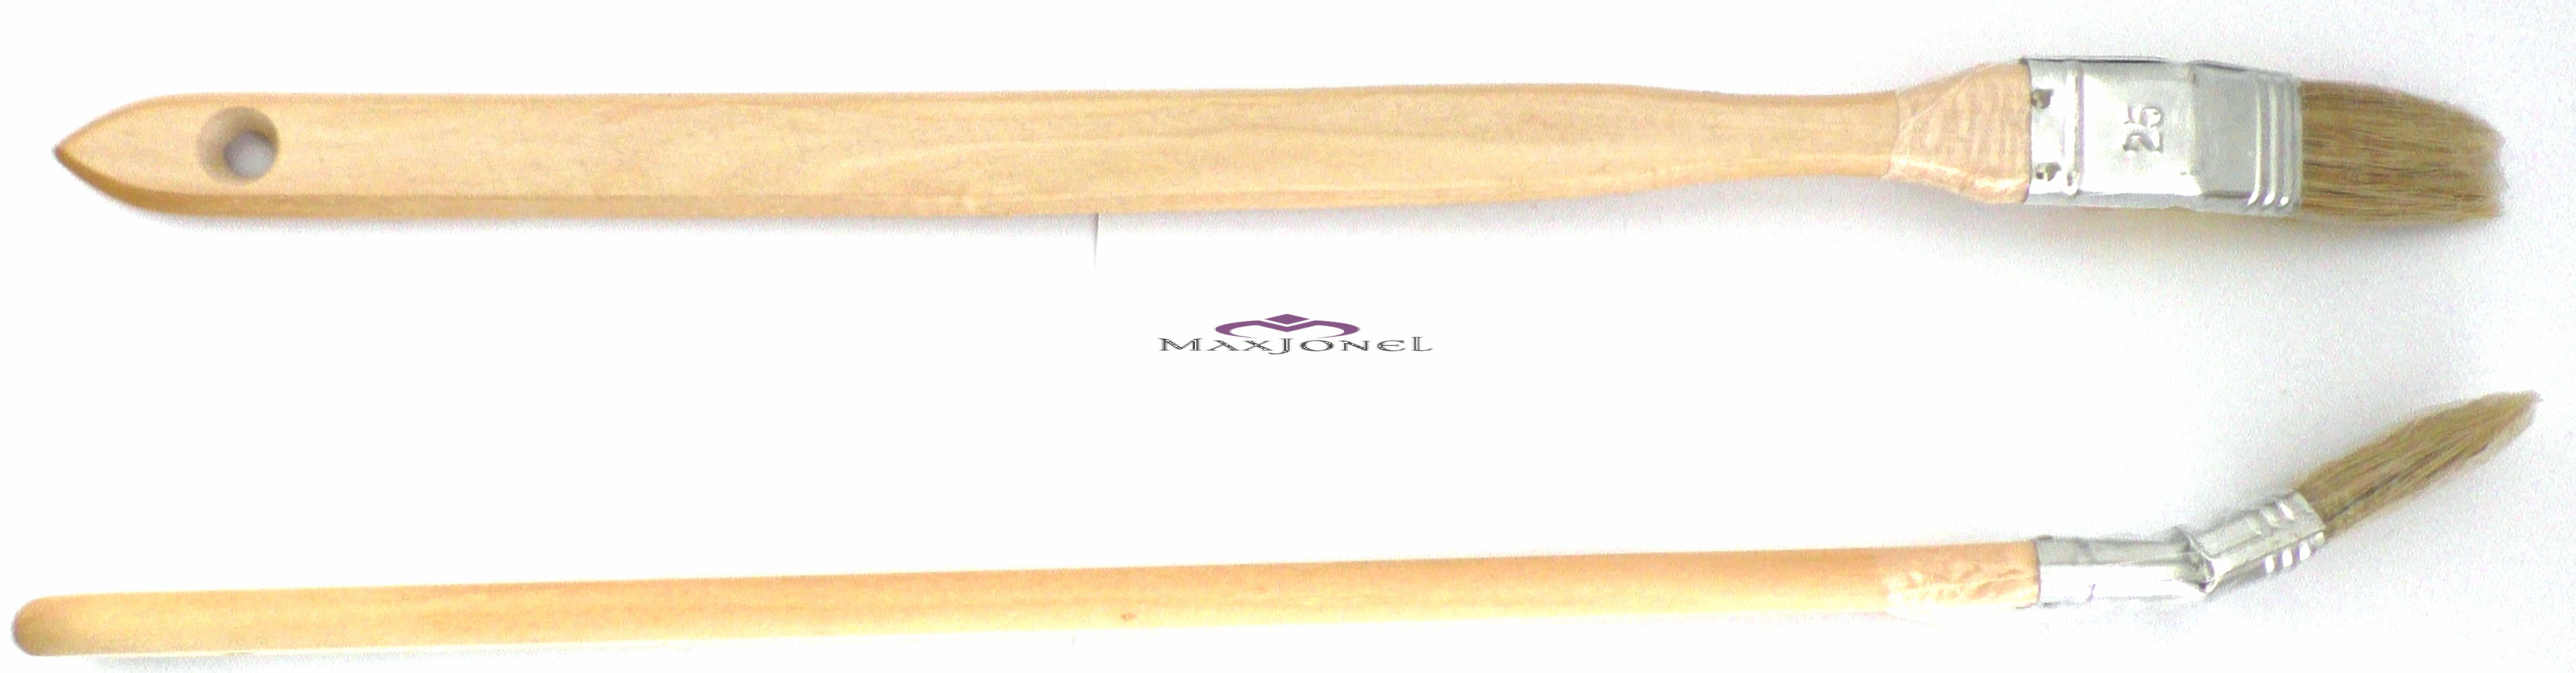 Pensula calorifer maner lemn - fir natural 25 mm